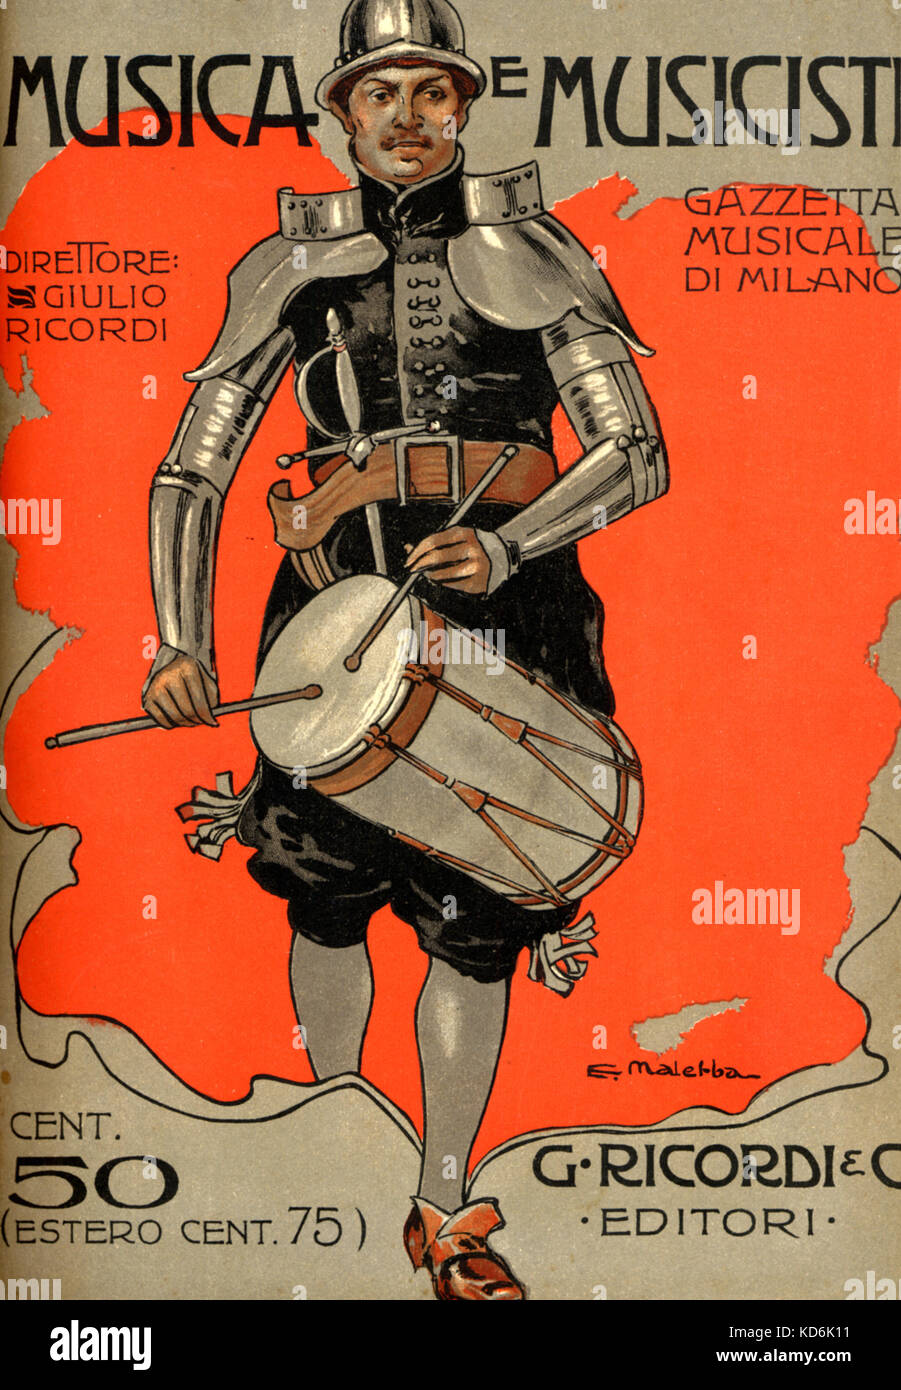 Seite - drum Player in der Rüstung. Abdeckung der italienischen Zeitschrift 'Musica e Musicisti", Nr. 93, Mailand, 1905 (der Editor wurde Giulio Ricordi). Illustration von E.Malerba. Stockfoto